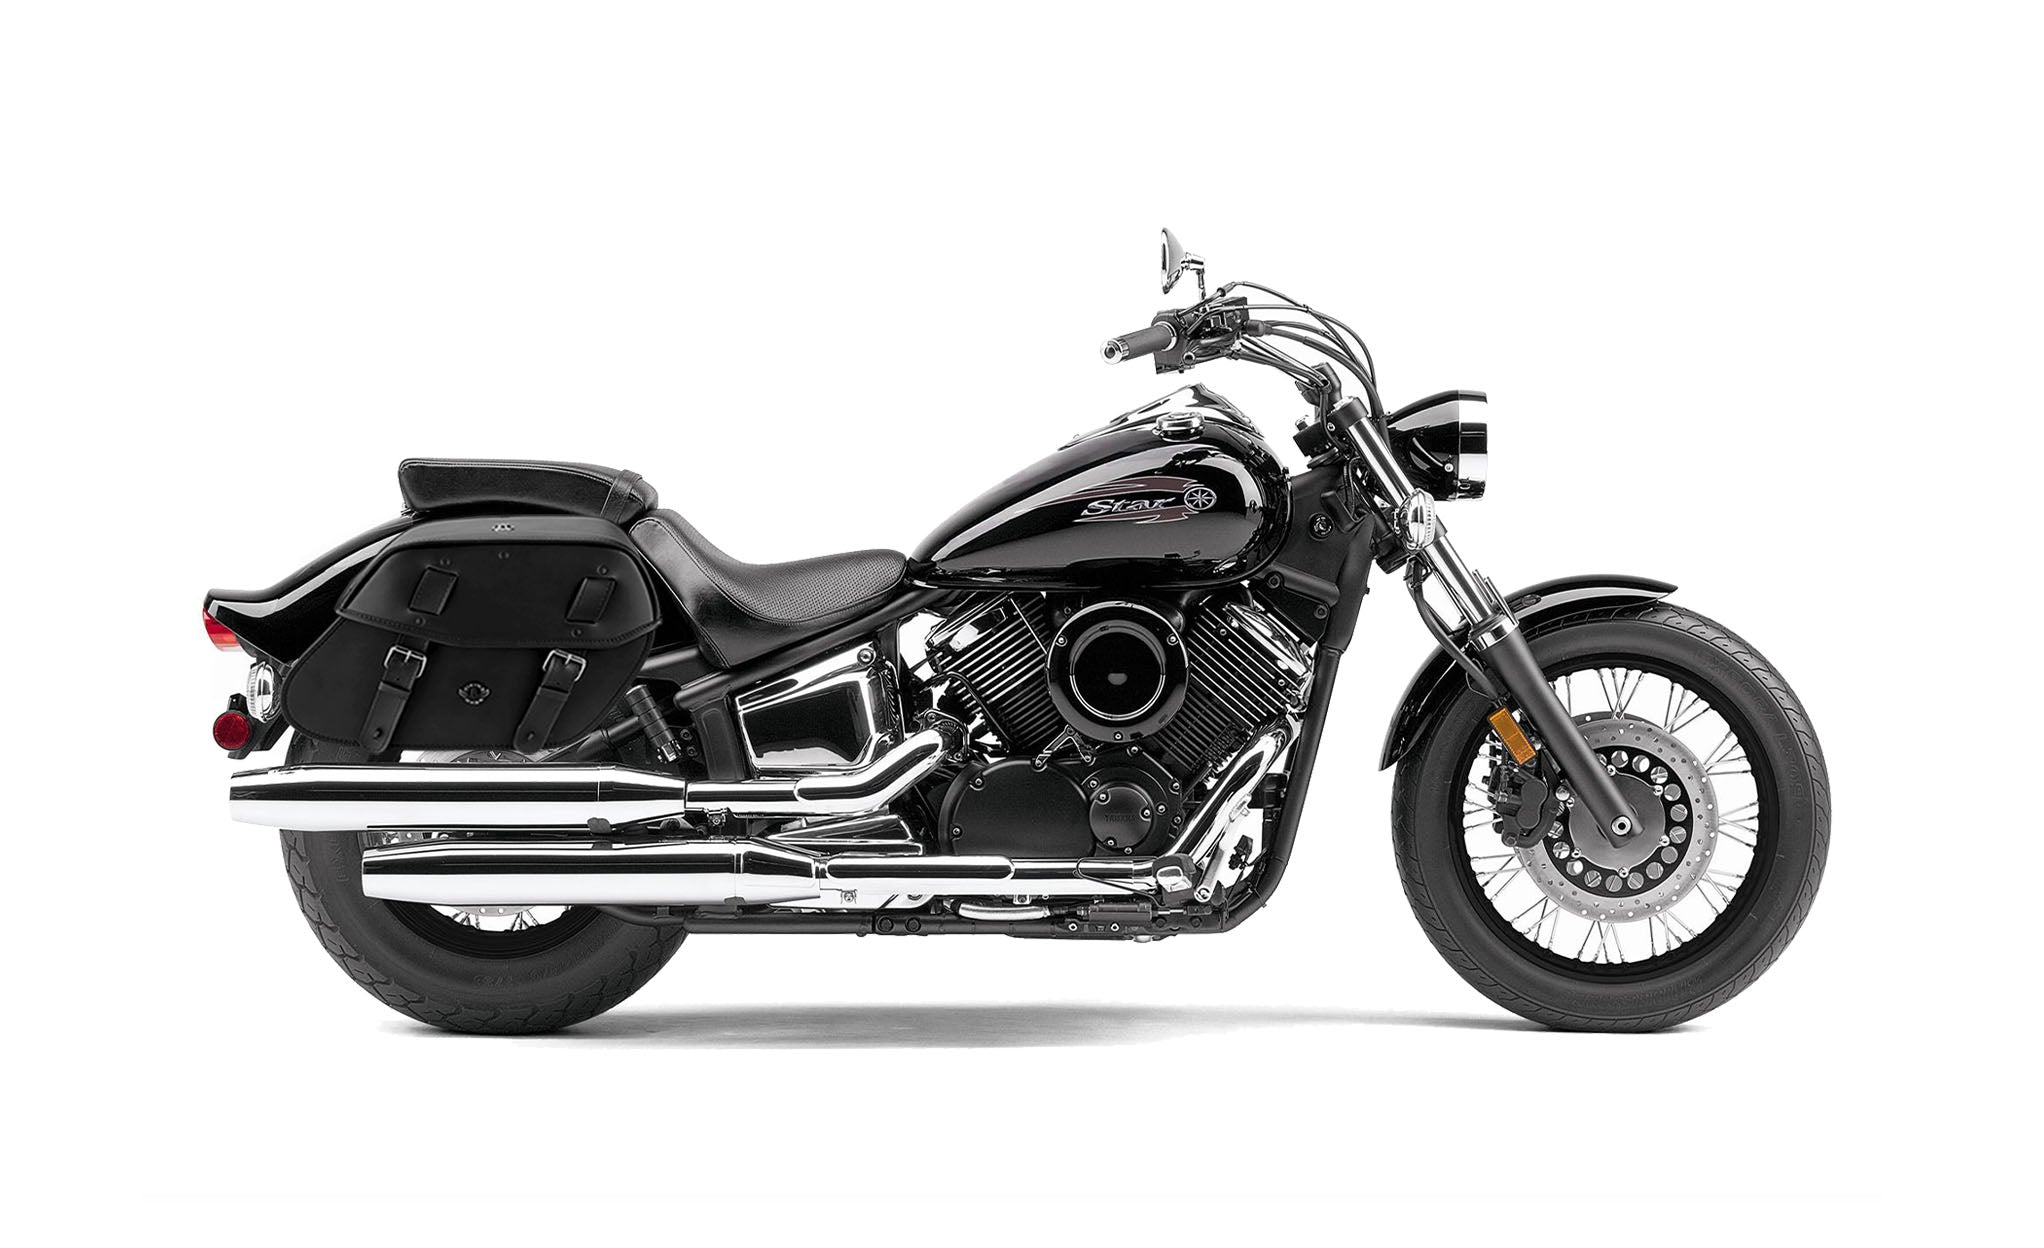 Viking Odin Large Yamaha V Star 1100 Custom Xvs11T Leather Motorcycle Saddlebags on Bike Photo @expand